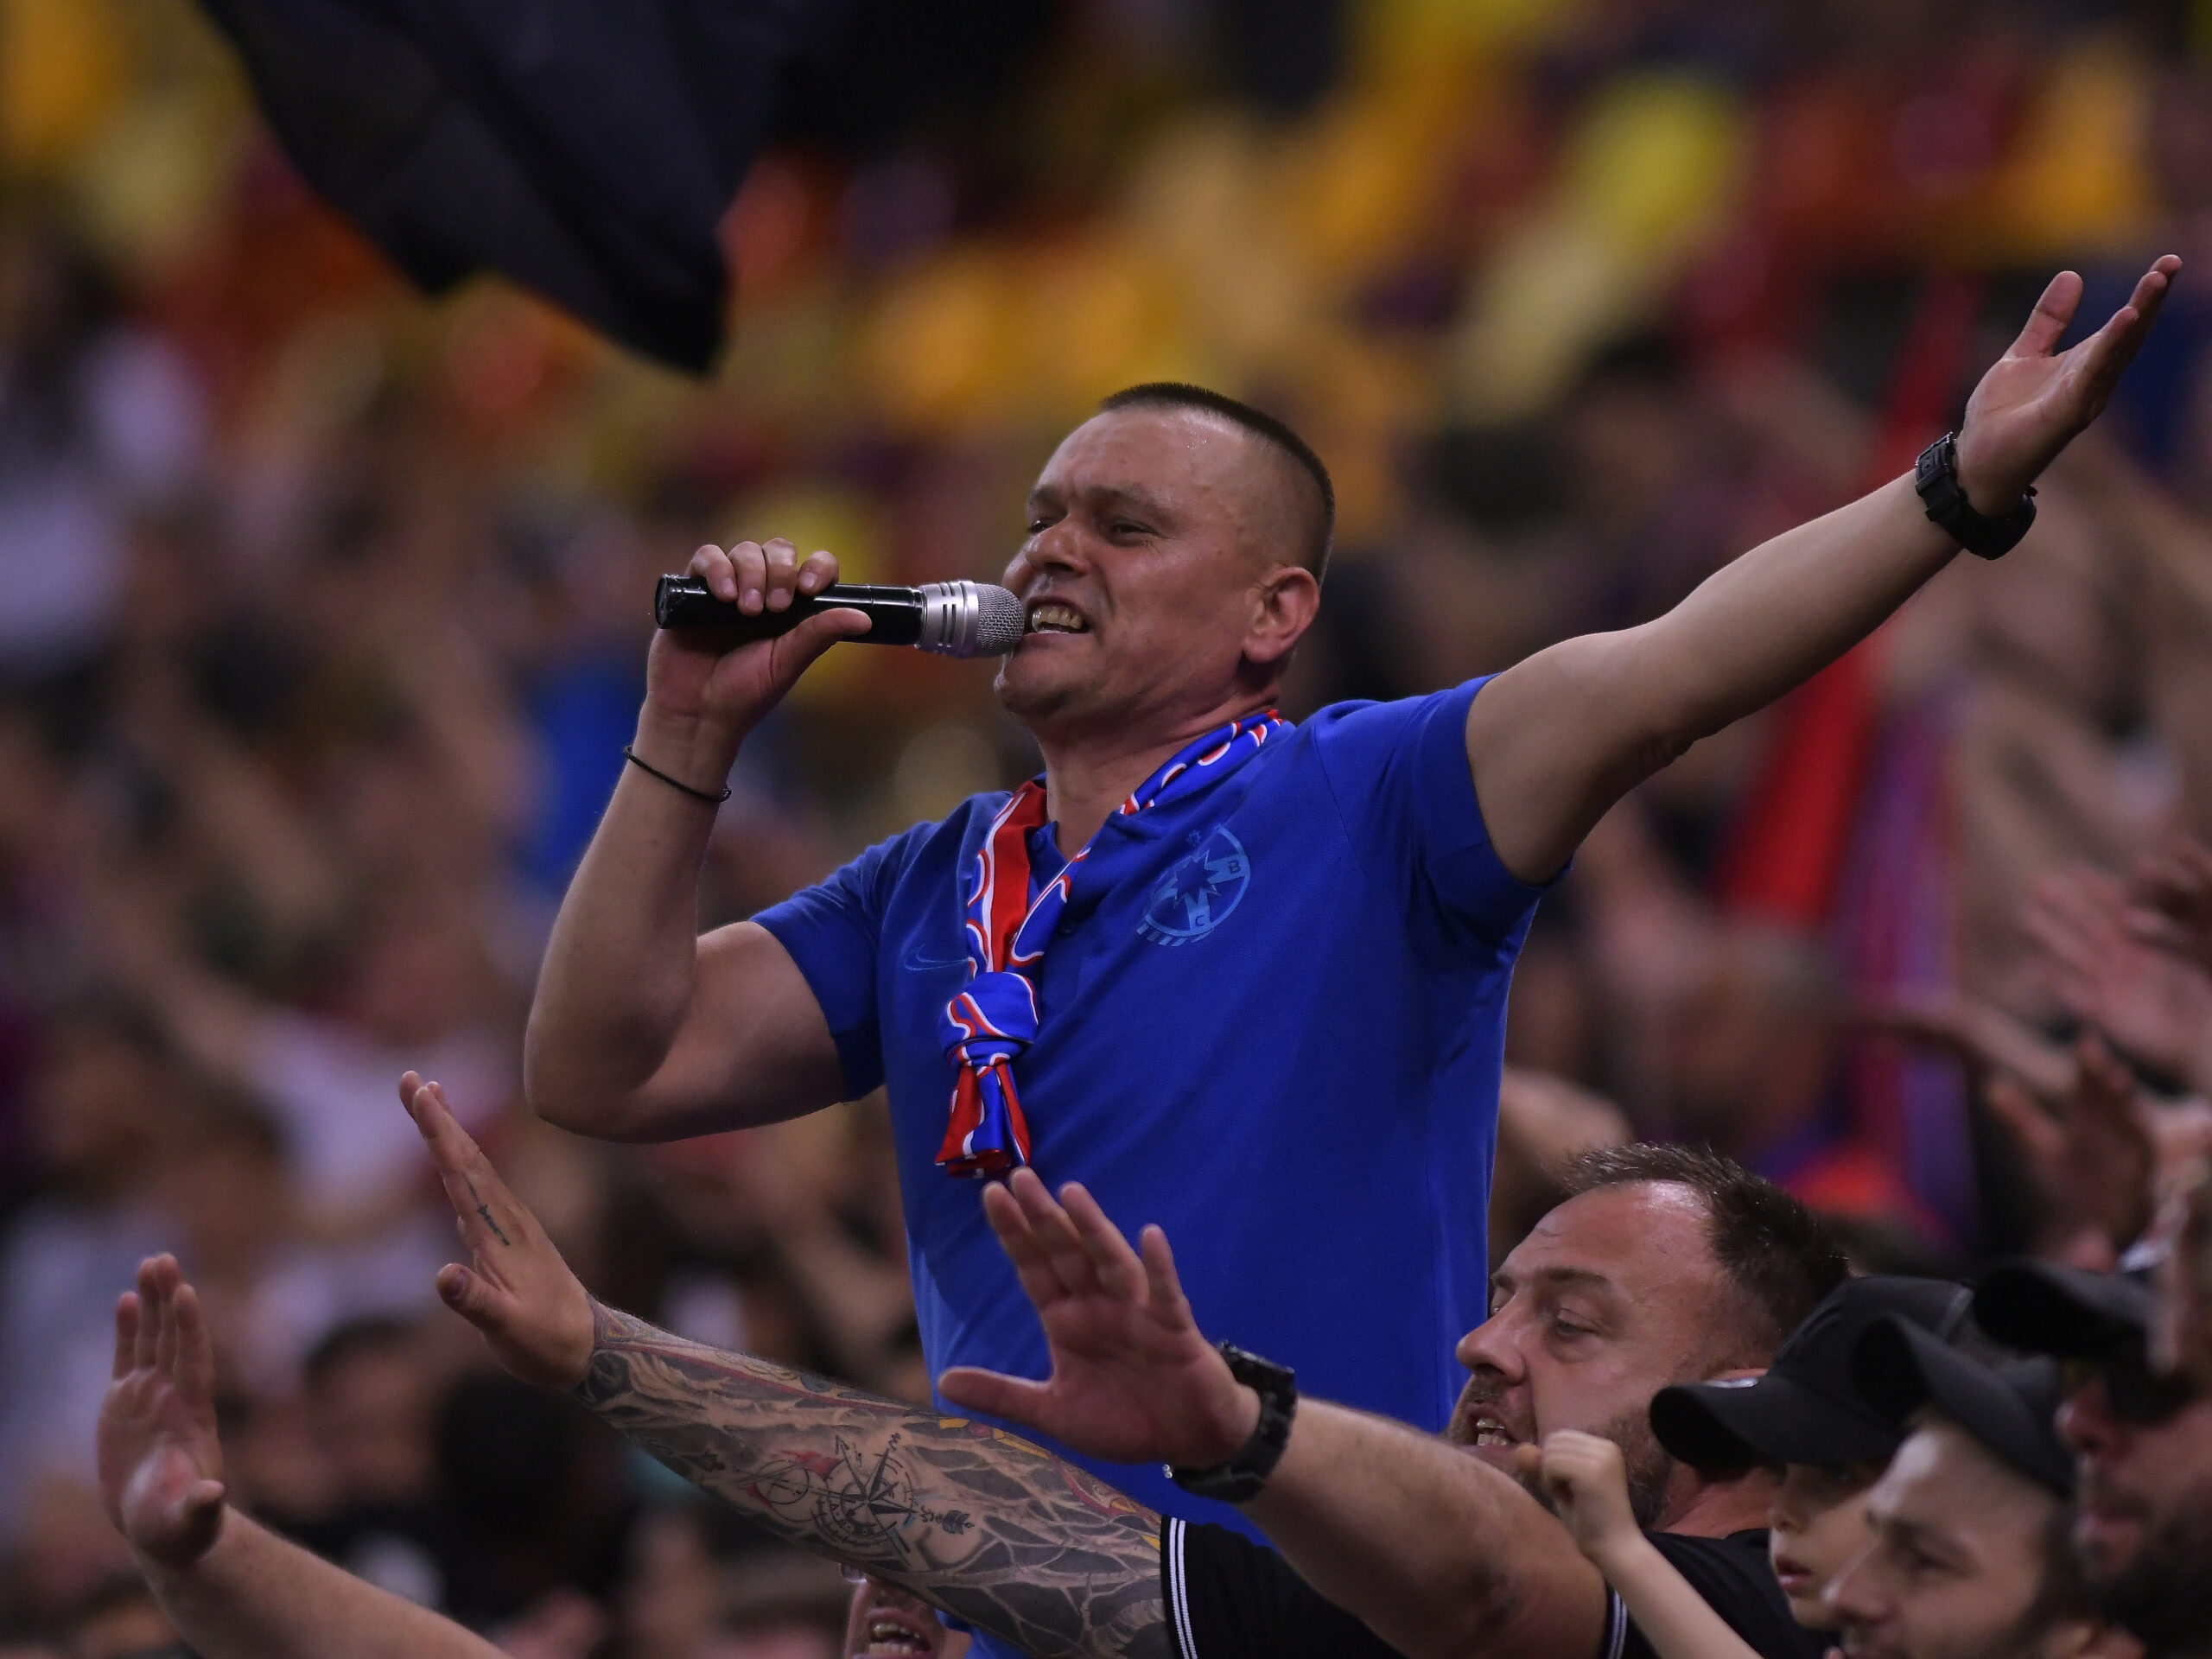 CSA Steaua București - FCSB 2 1-1 » Vezi VIDEO cu golurile. Echipa de gală  a lui Becali, egalată în prelungiri